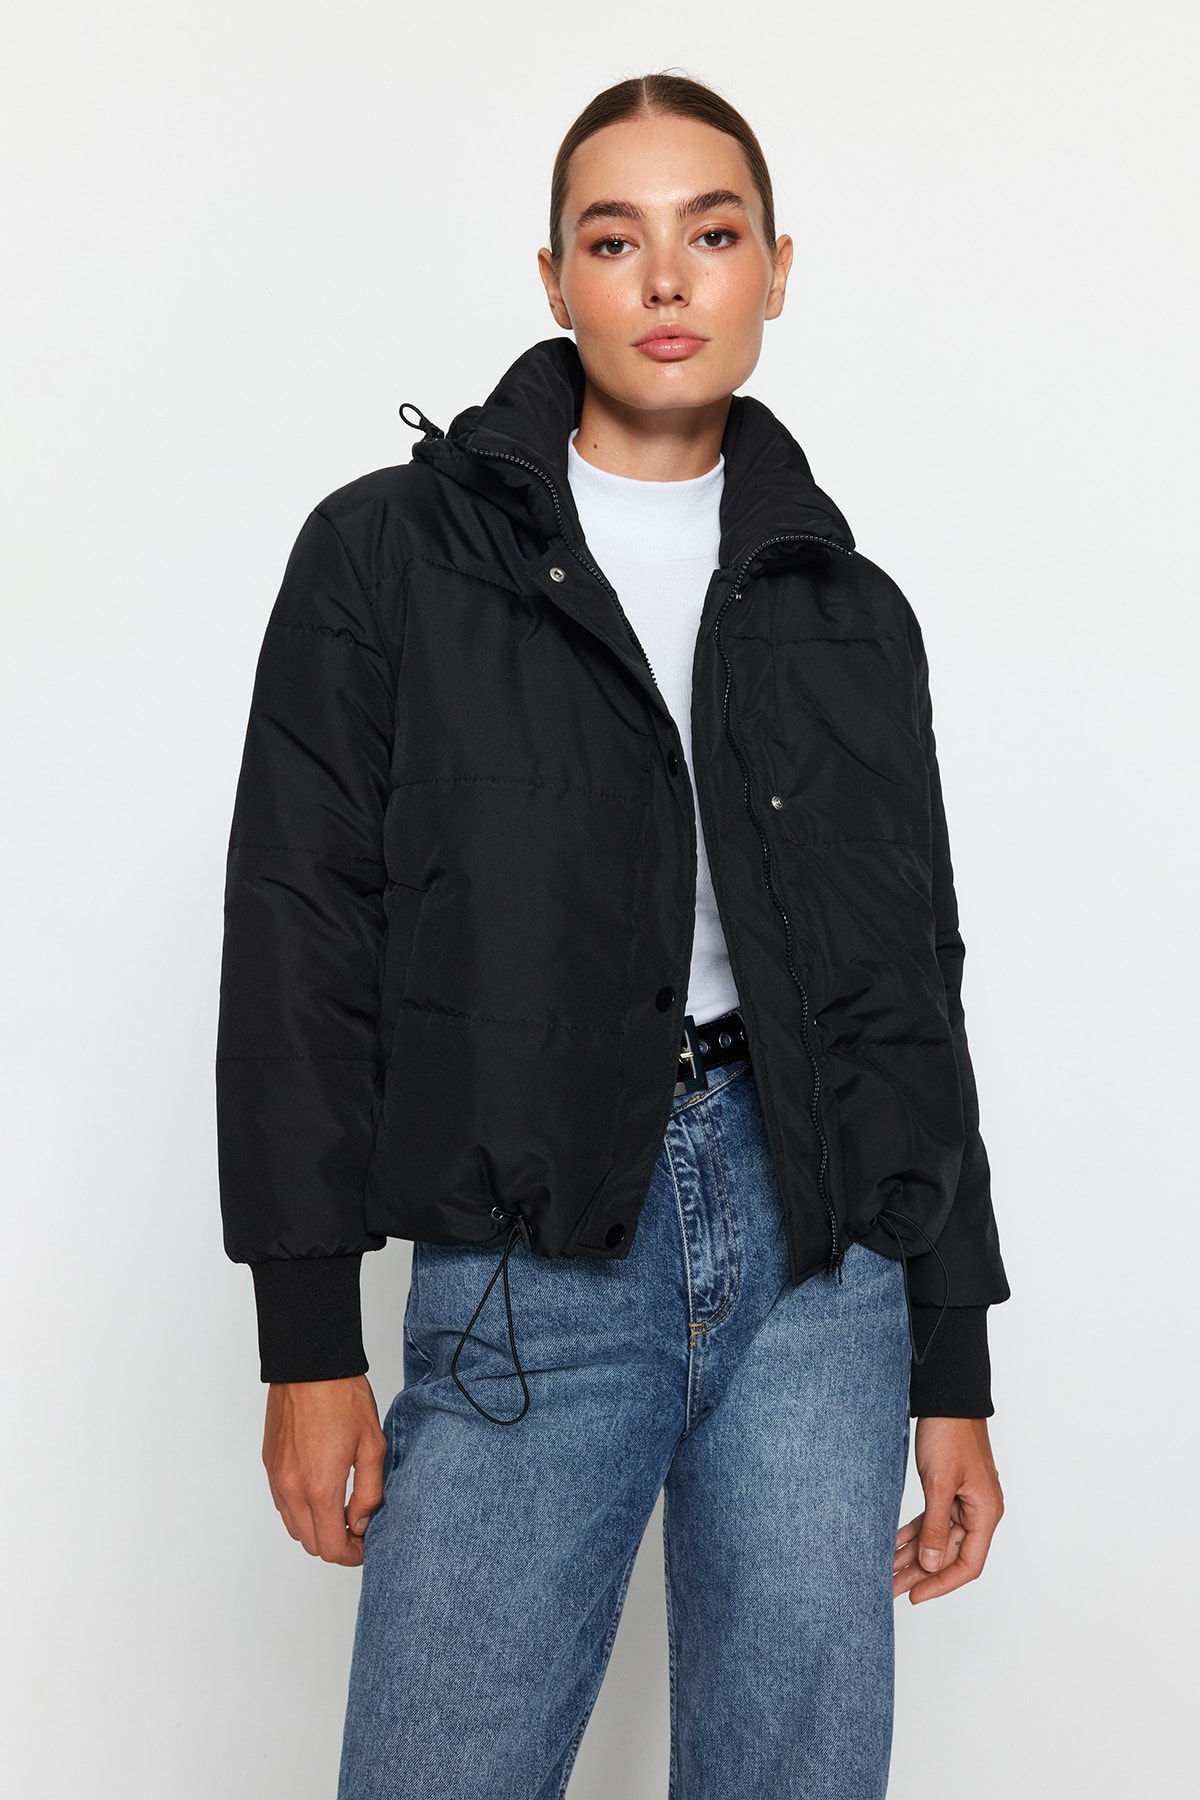 Куртка-пуховик Trendyol оверсайз водоотталкивающая стеганая с капюшоном, черный куртка стеганая с капюшоном двухцветная 12 лет 150 см черный